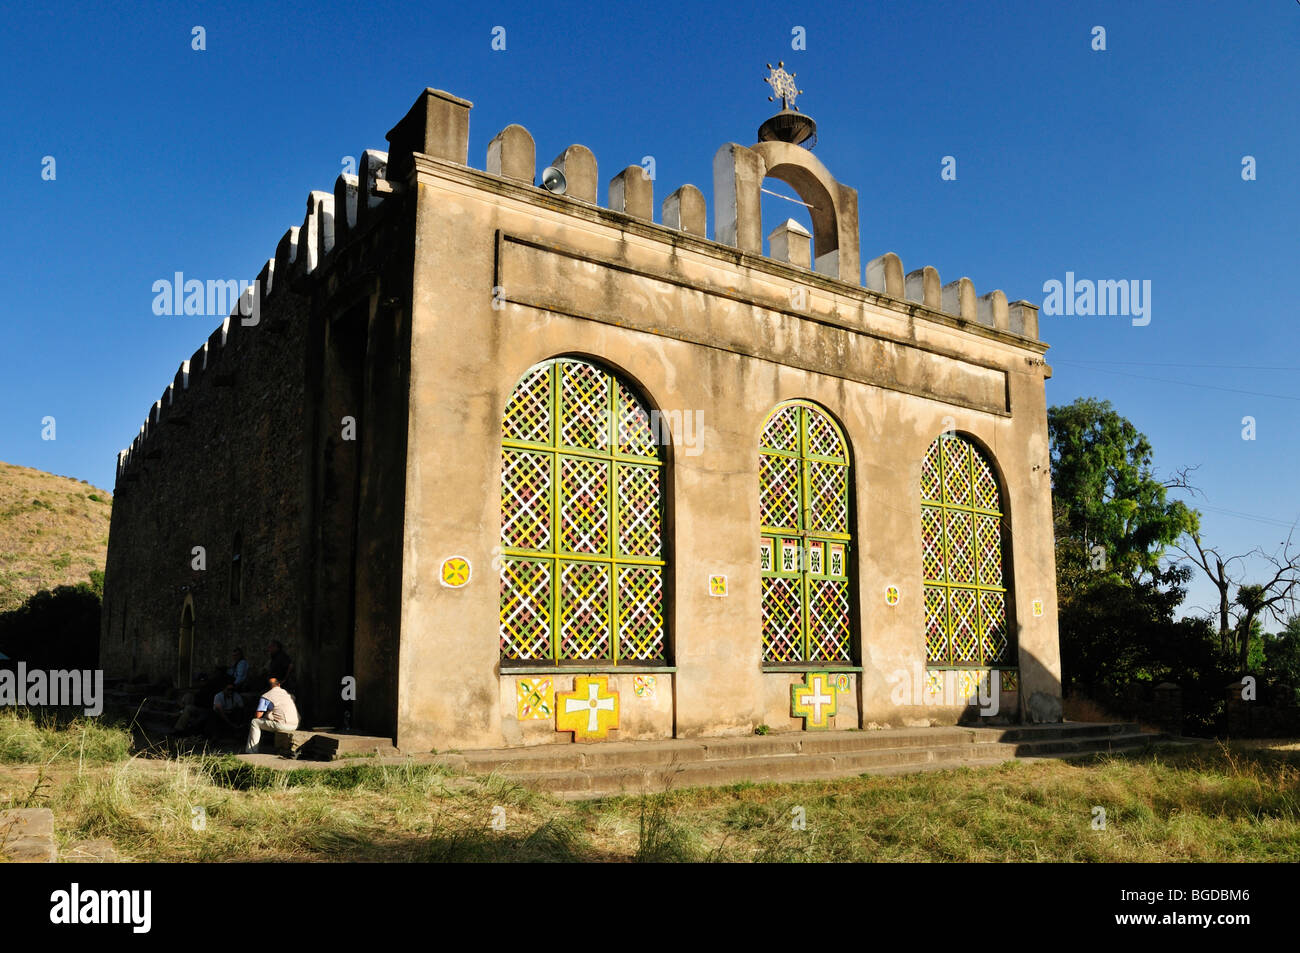 Old Saint Mary de Sion eglise de l'Eglise orthodoxe éthiopienne, d'Axoum à Axum, UNESCO World Heritage Site, Tigray, Éthiopie, Af Banque D'Images